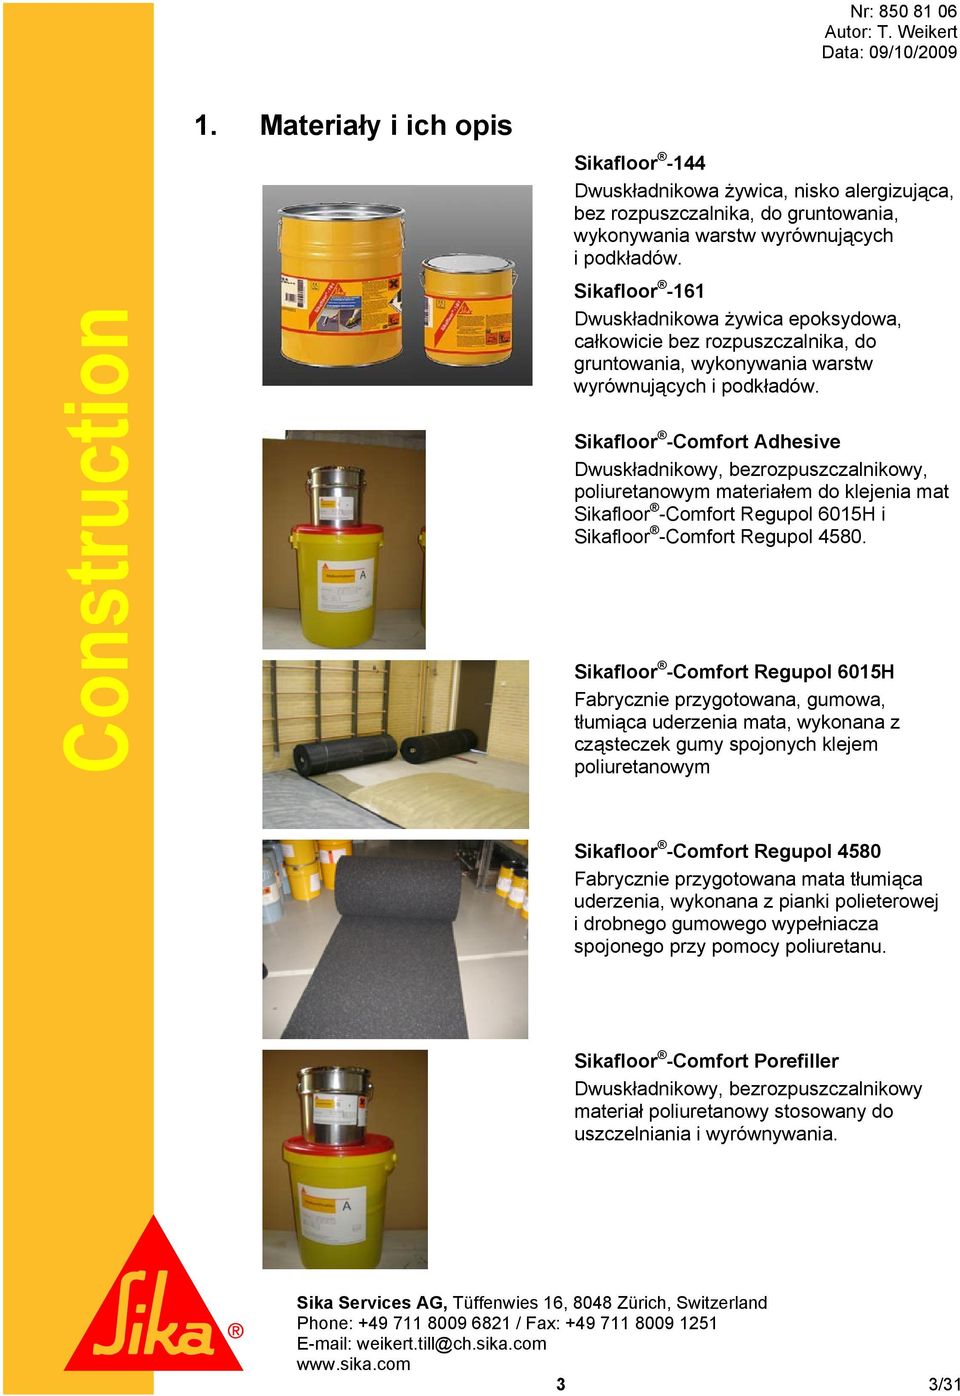 Sikafloor -Comfort Adhesive Dwuskładnikowy, bezrozpuszczalnikowy, poliuretanowym materiałem do klejenia mat Sikafloor -Comfort Regupol 6015H i Sikafloor -Comfort Regupol 4580.